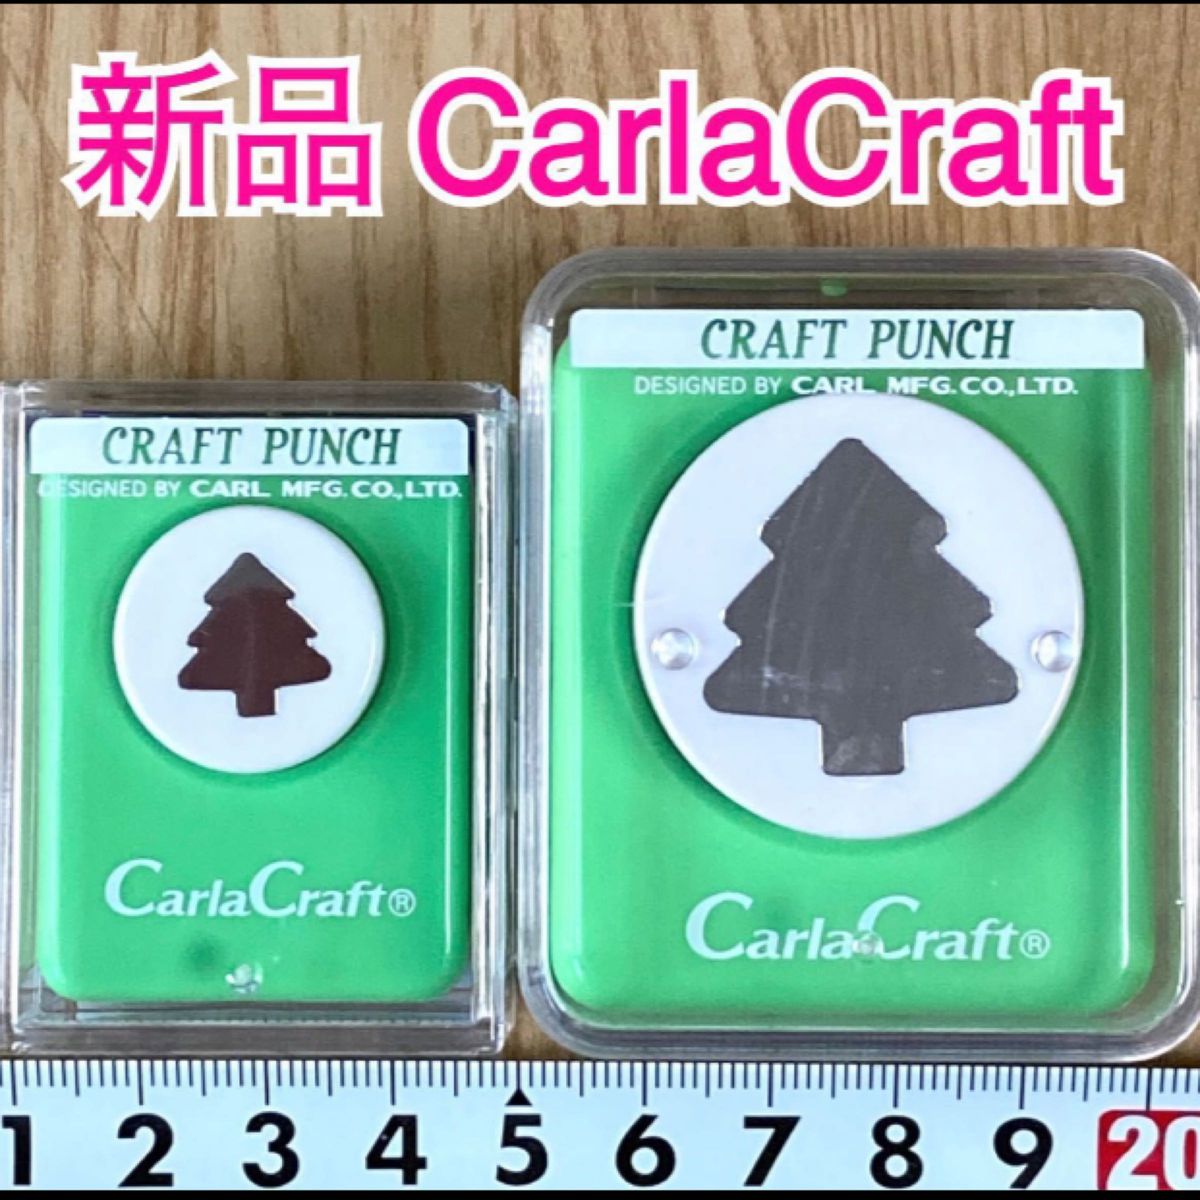 【新品】木クリスマスツリー冬カーラクラフトパンチ本体まとめ売りセット